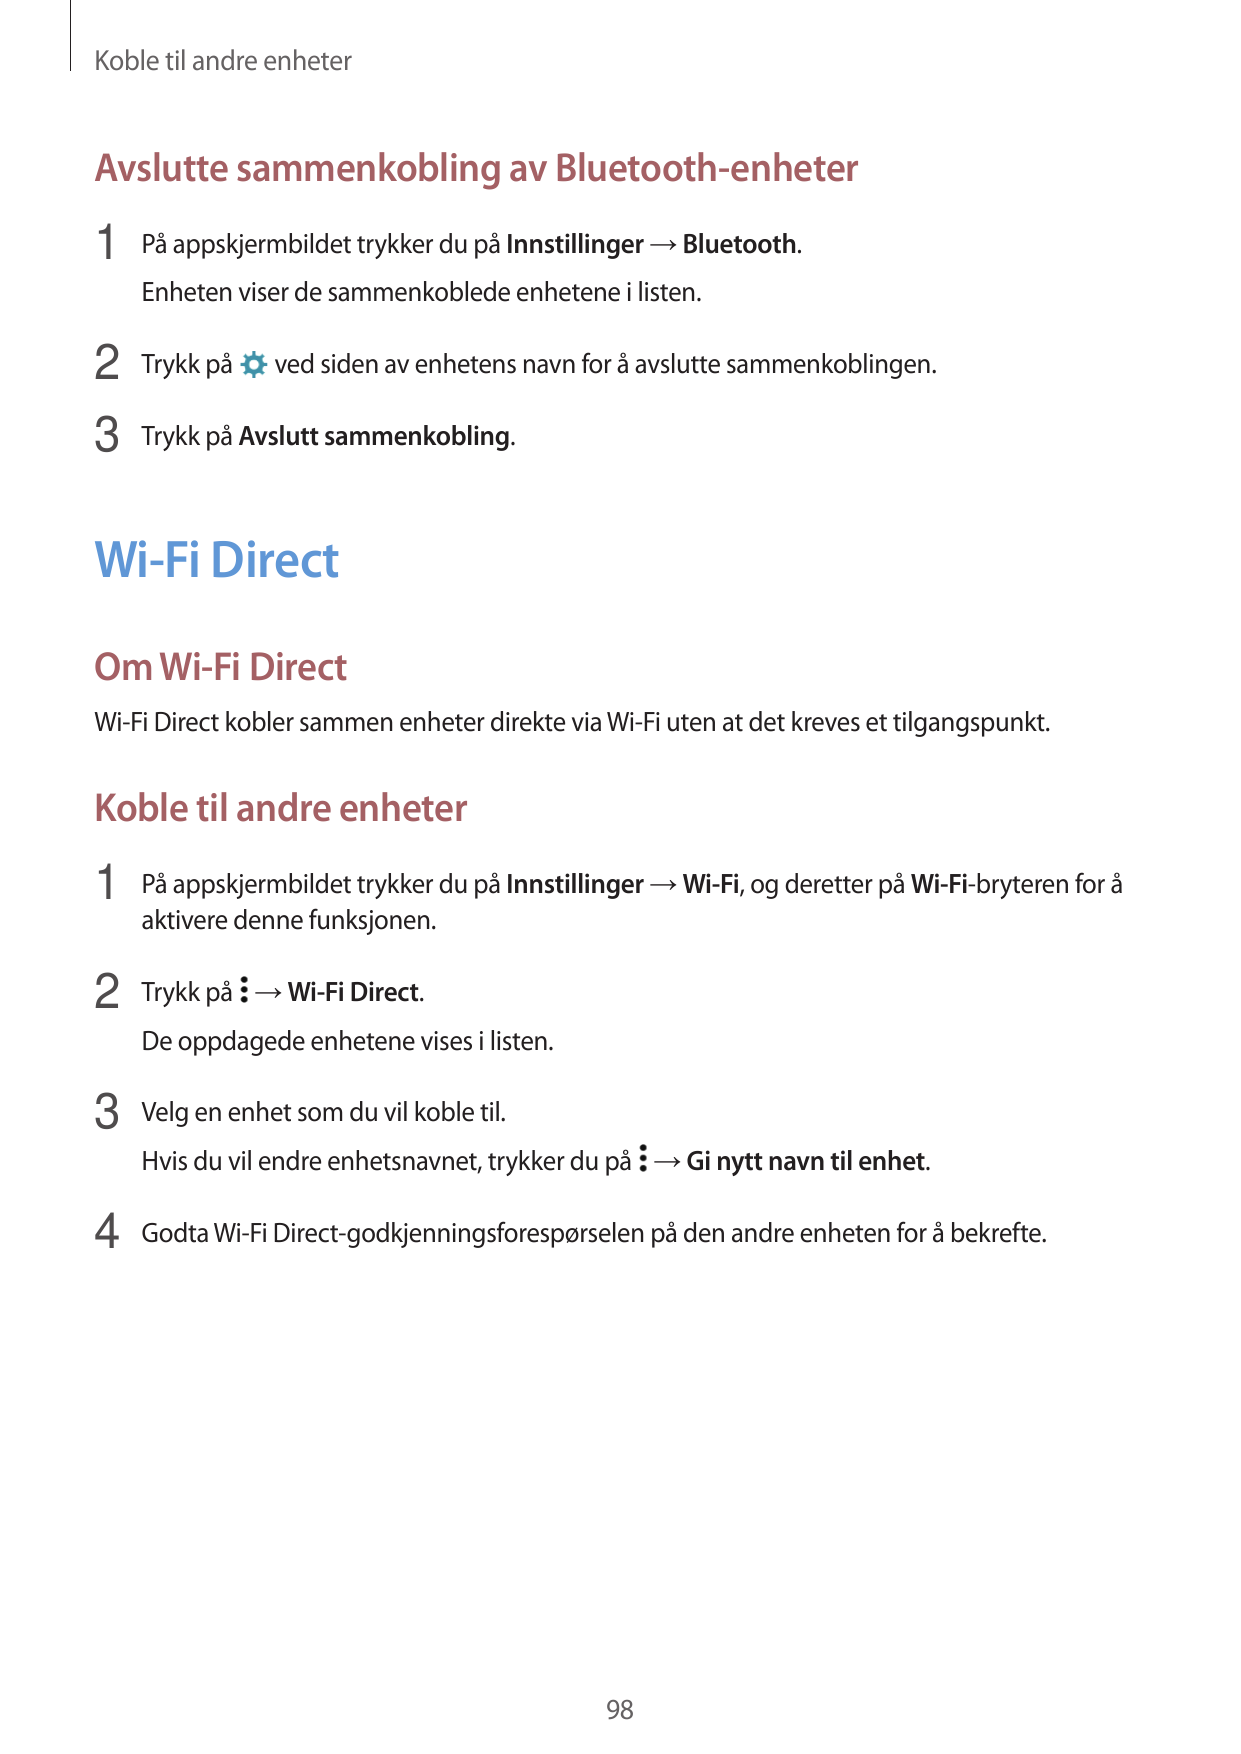 Koble til andre enheterAvslutte sammenkobling av Bluetooth-enheter1 På appskjermbildet trykker du på Innstillinger → Bluetooth.E